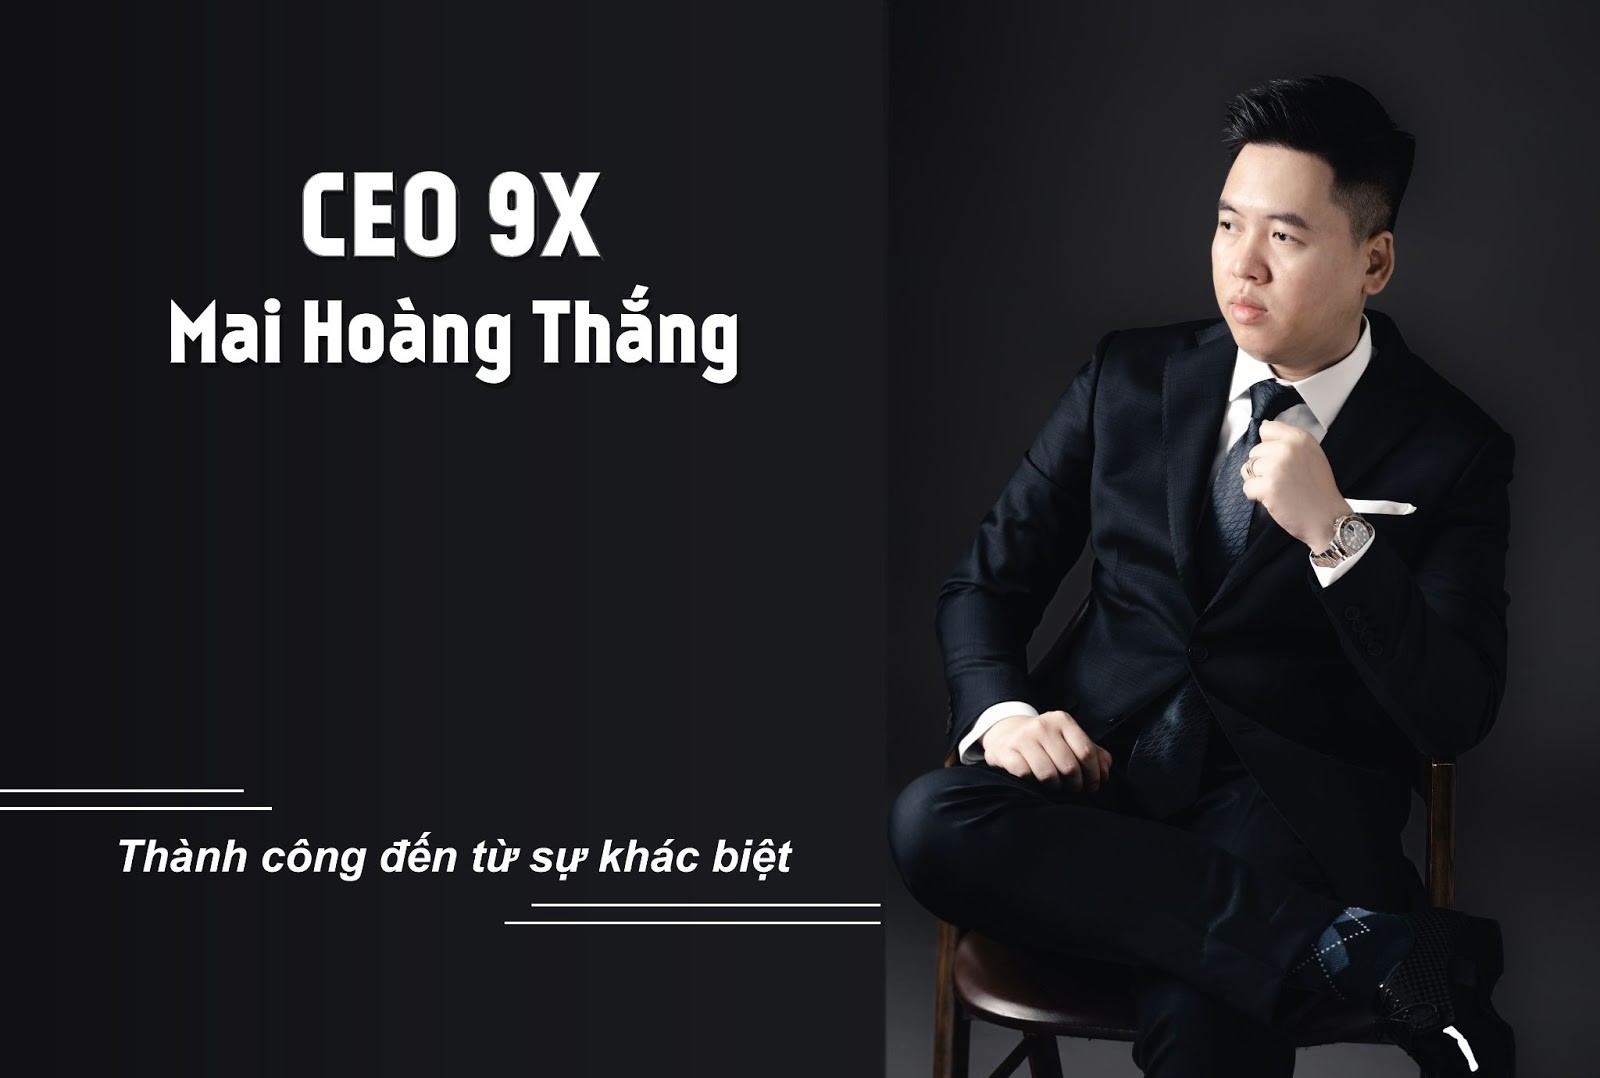 CEO 9X Mai Hoàng Thắng - Thành công đến từ sự khác biệt